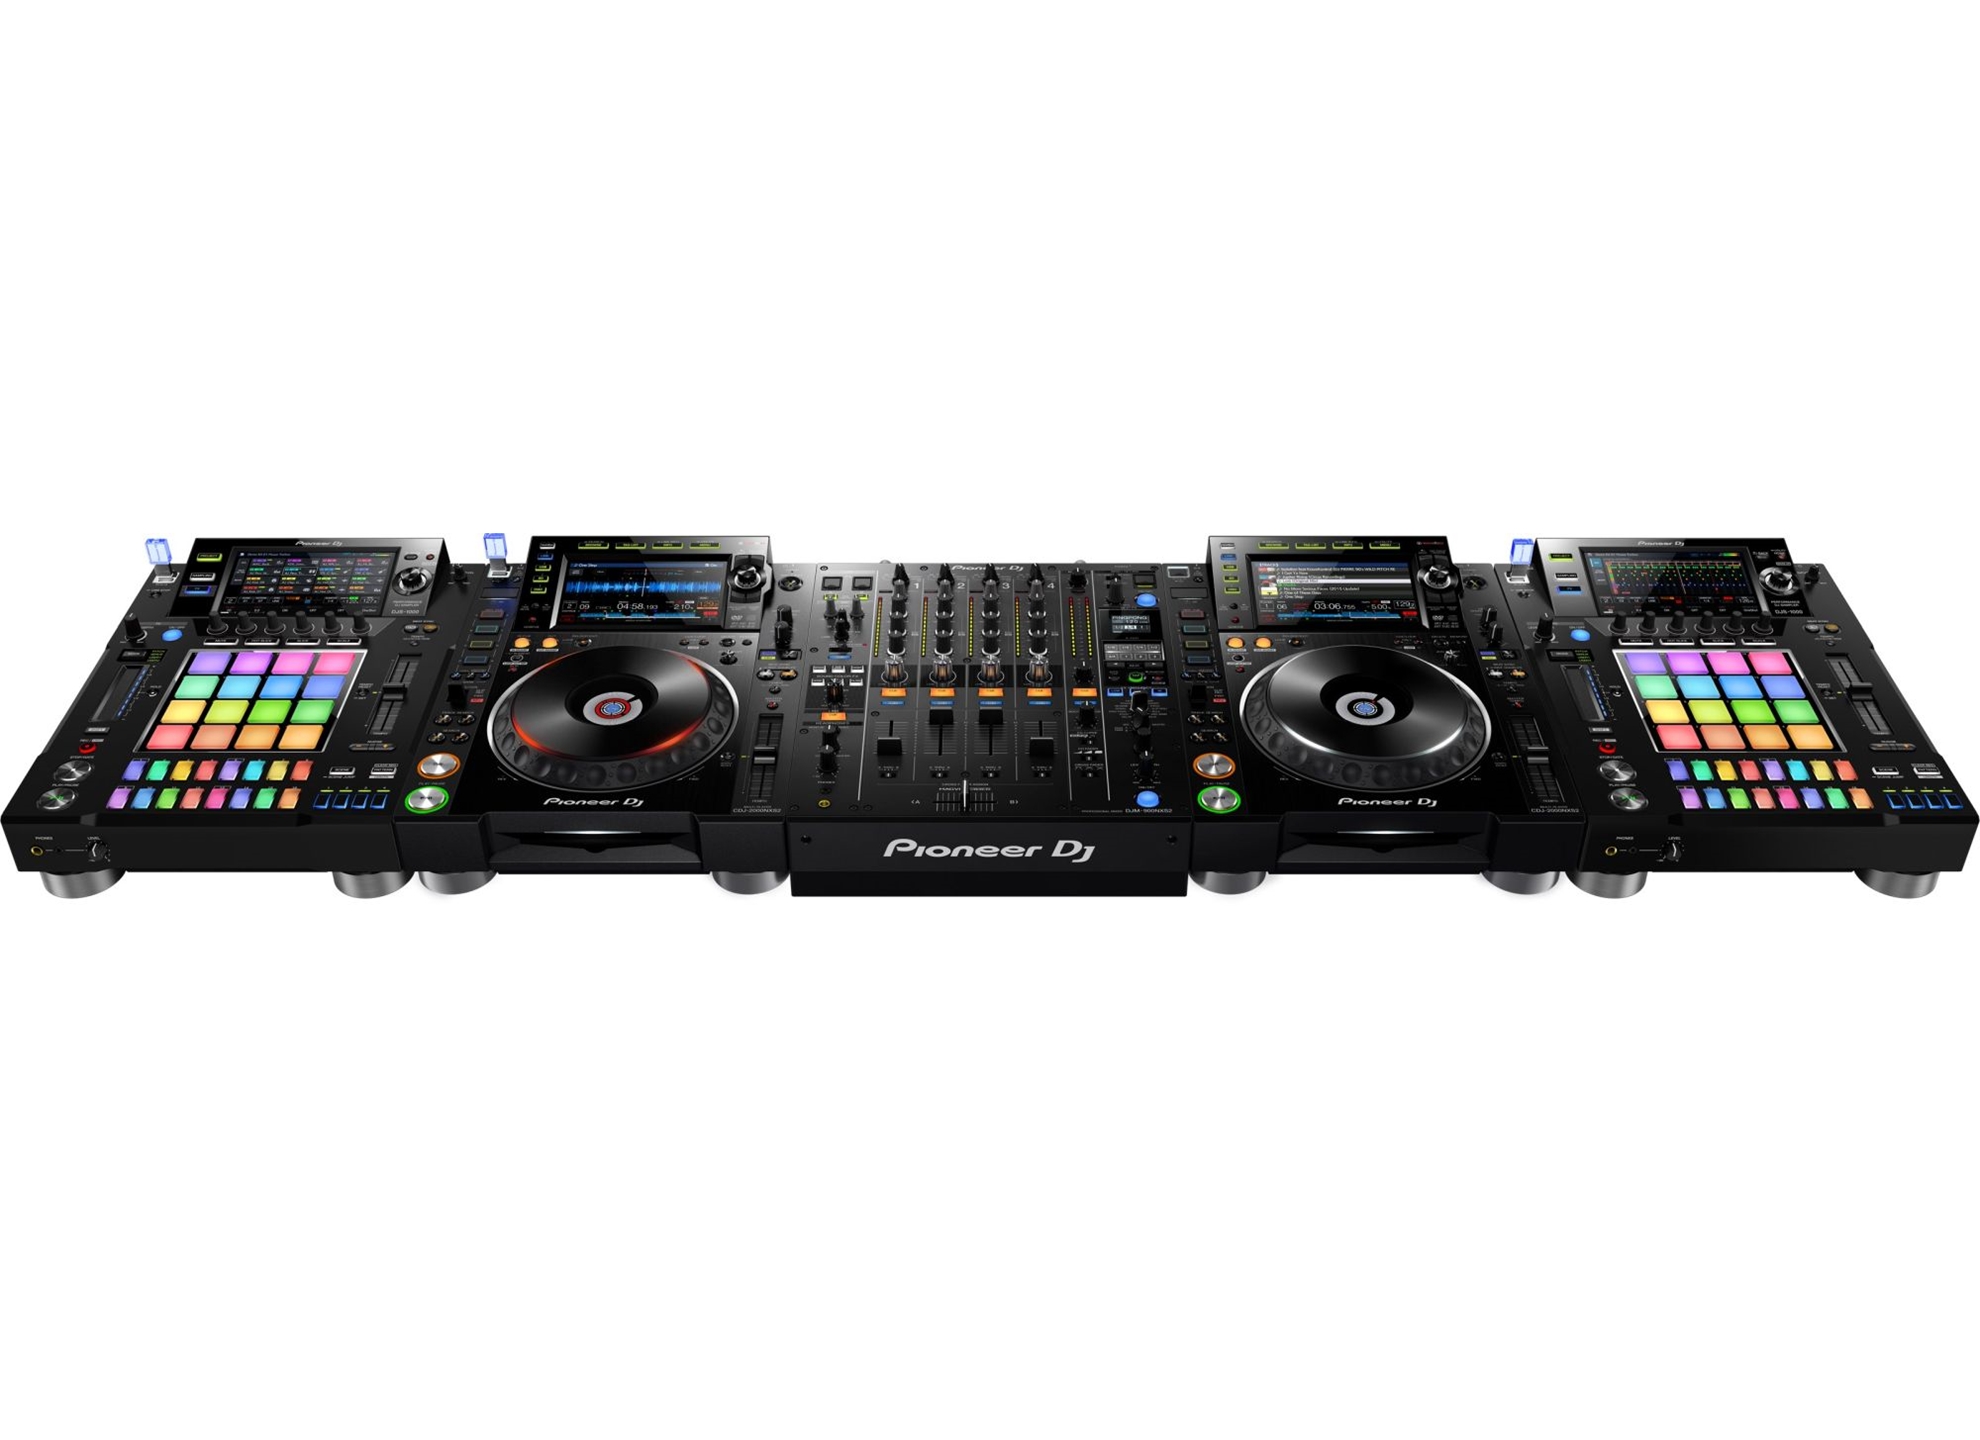 DJS-1000 DJ Sampler